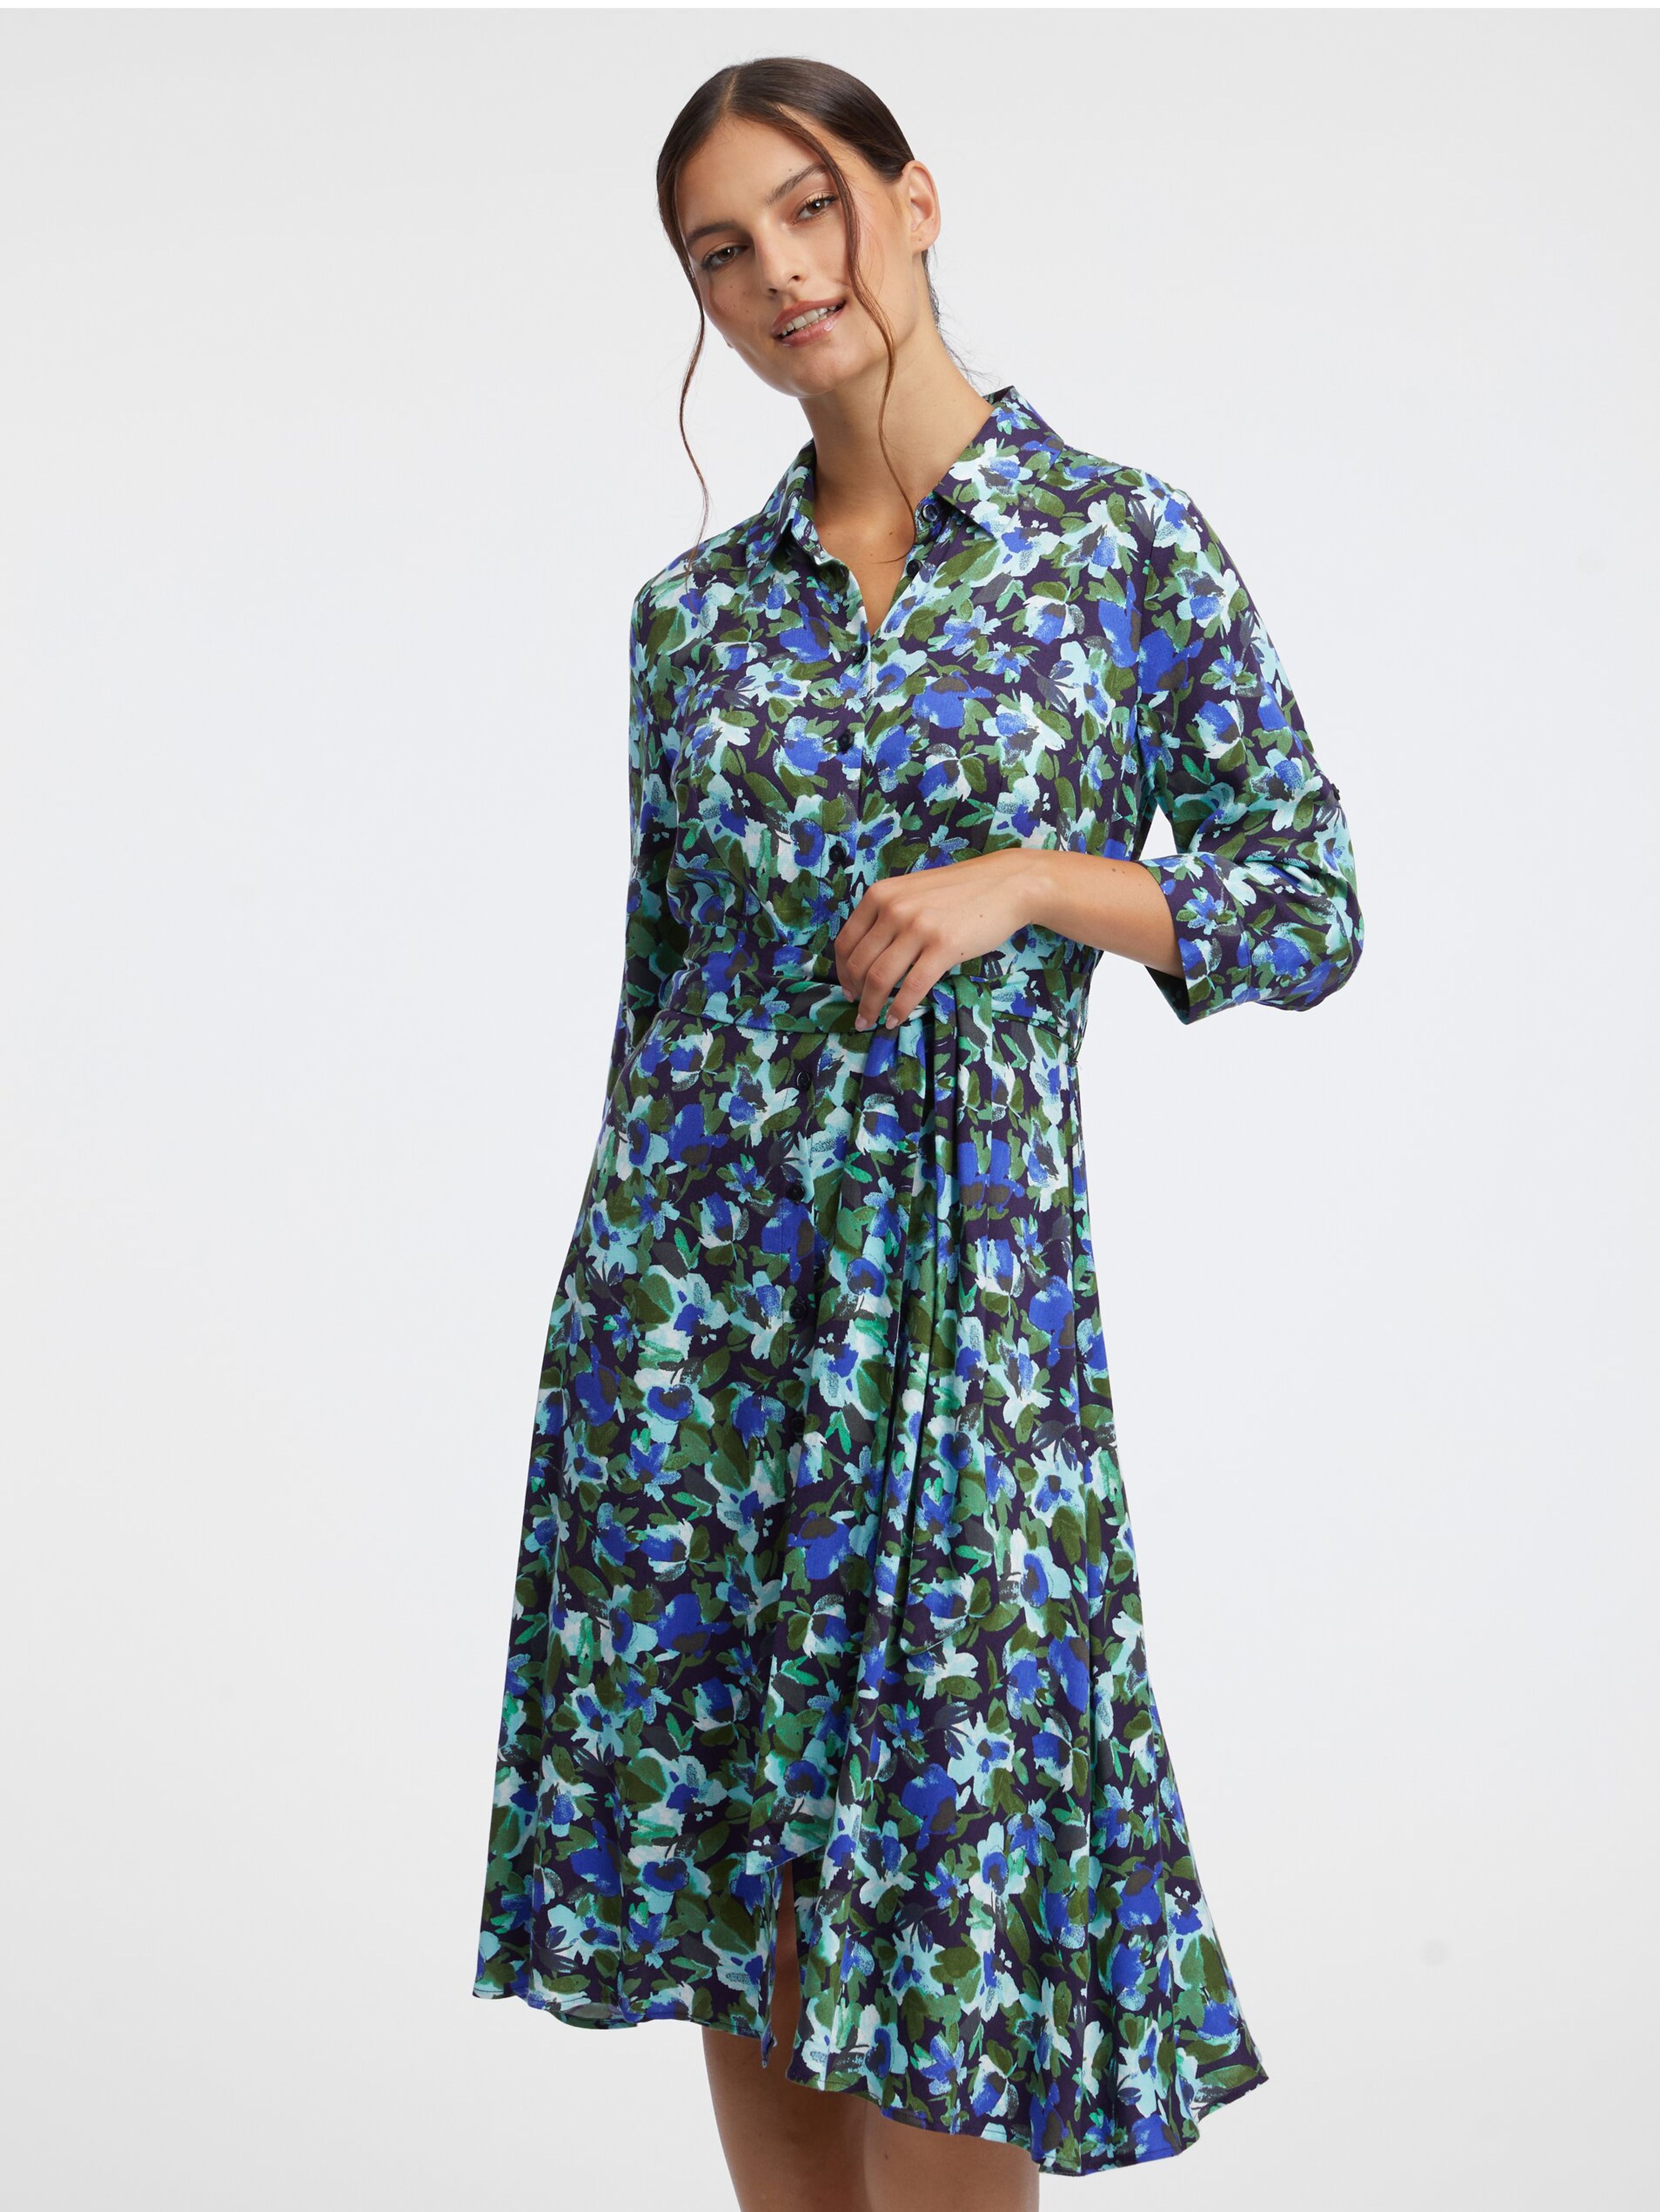 Rochie cămașă cu flori pentru femei, verde și albastră ORSAY